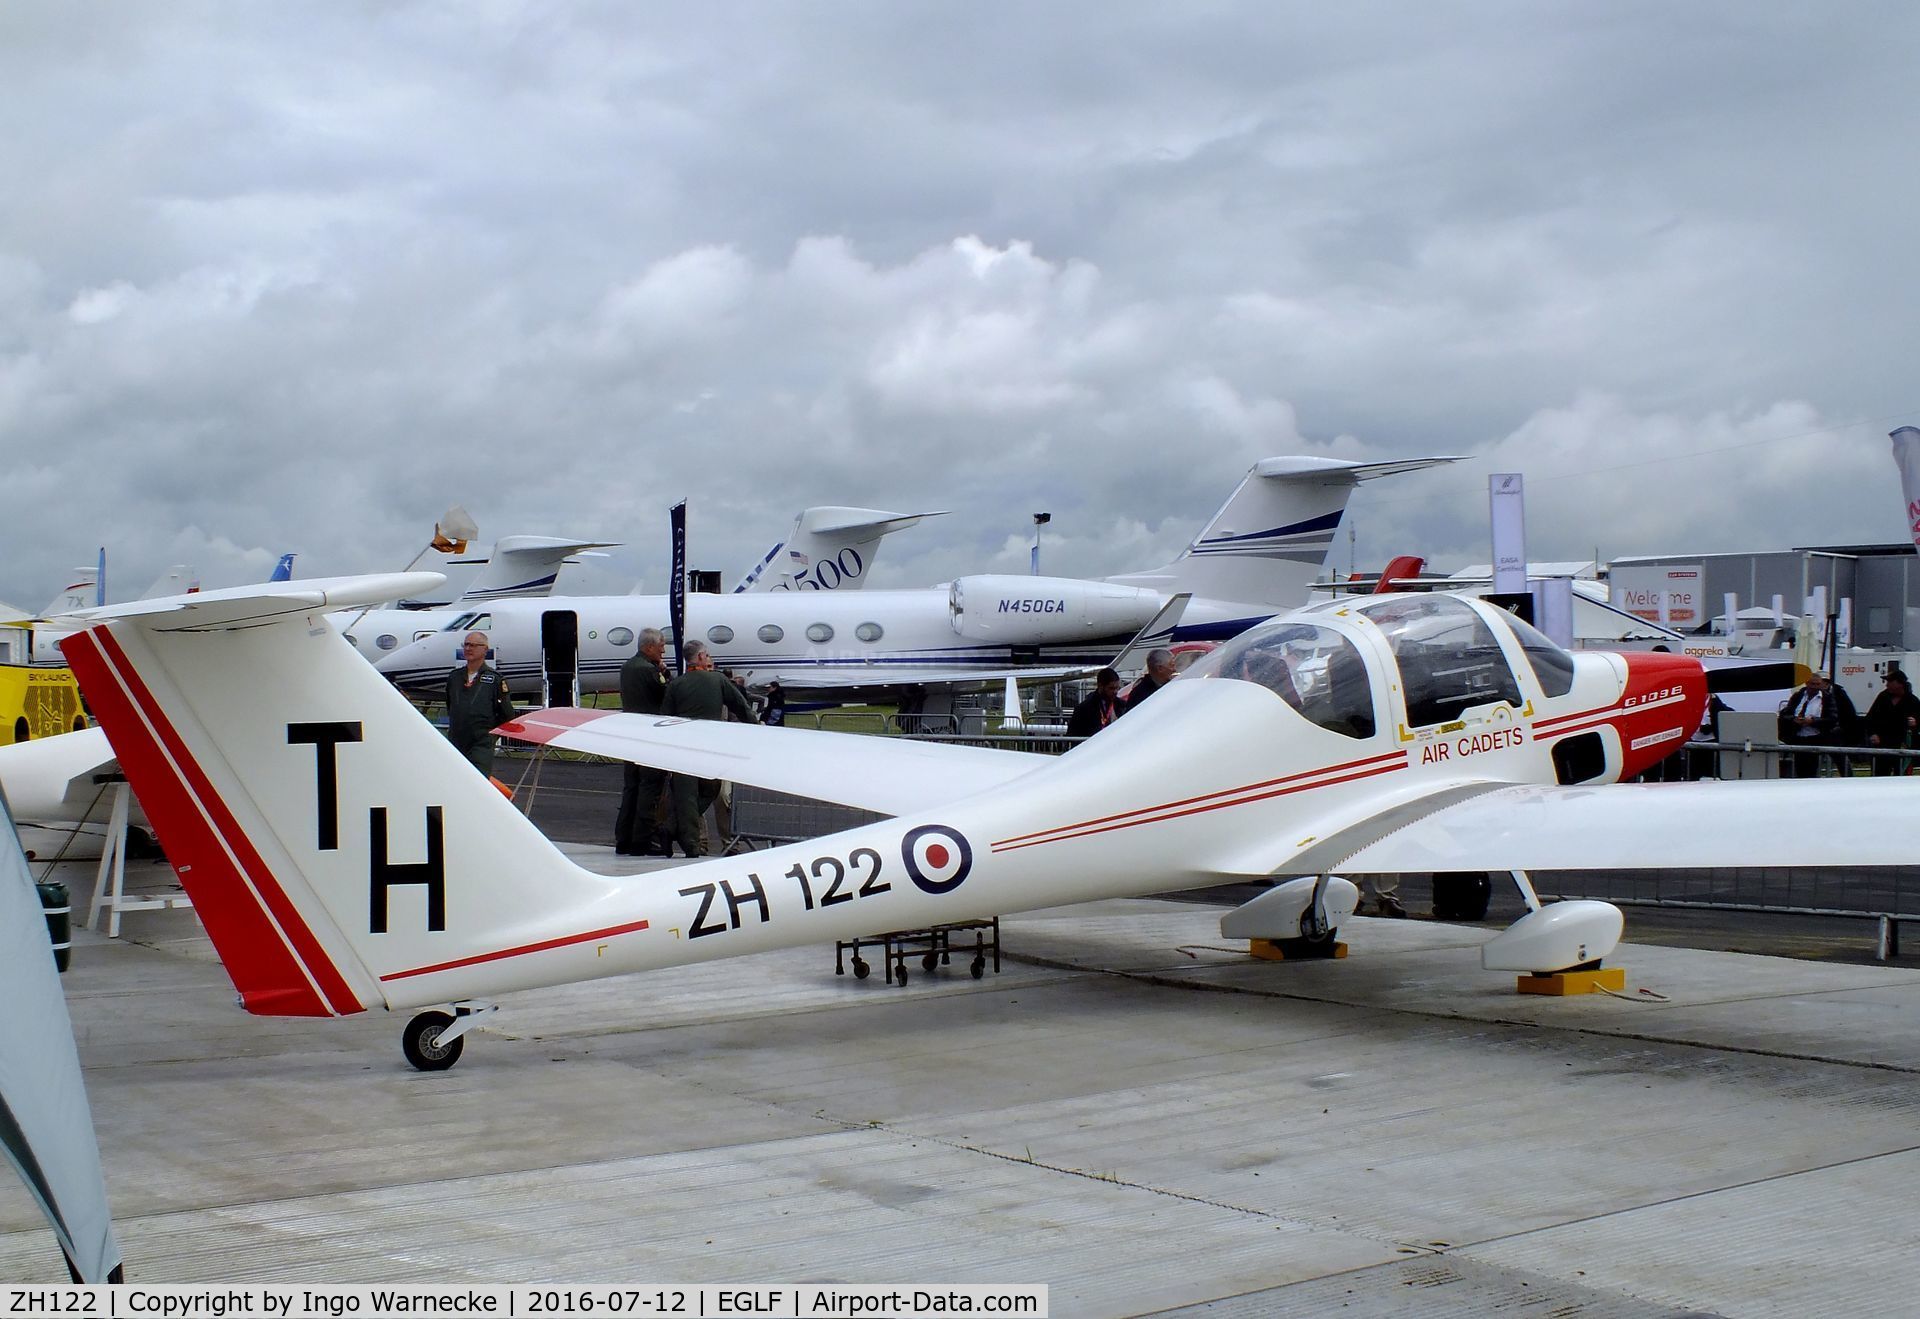 ZH122, Grob G-109B Vigilant T1 C/N 6515, Grob G.109B Vigilant T1 of the RAF at Farnborough International 2016